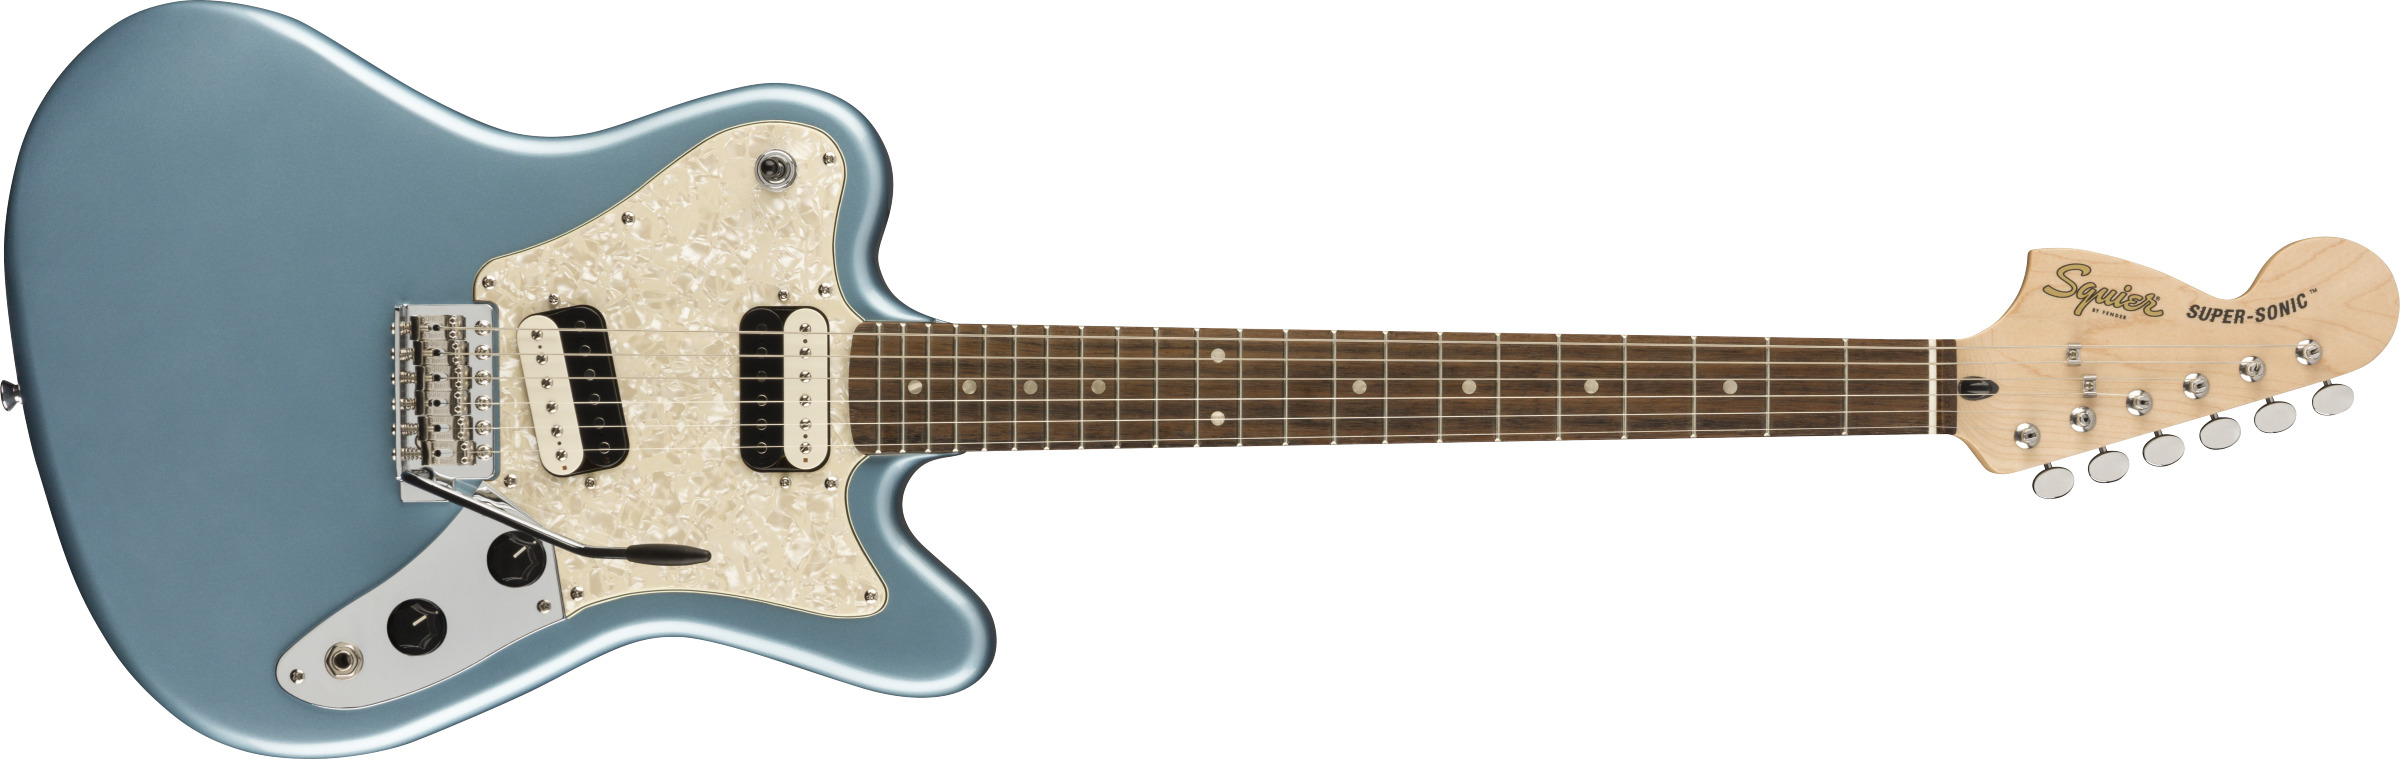 Se Fender Squier Paranormal Super-Sonic El-guitar (Ice Blue Metallic) hos Drum City